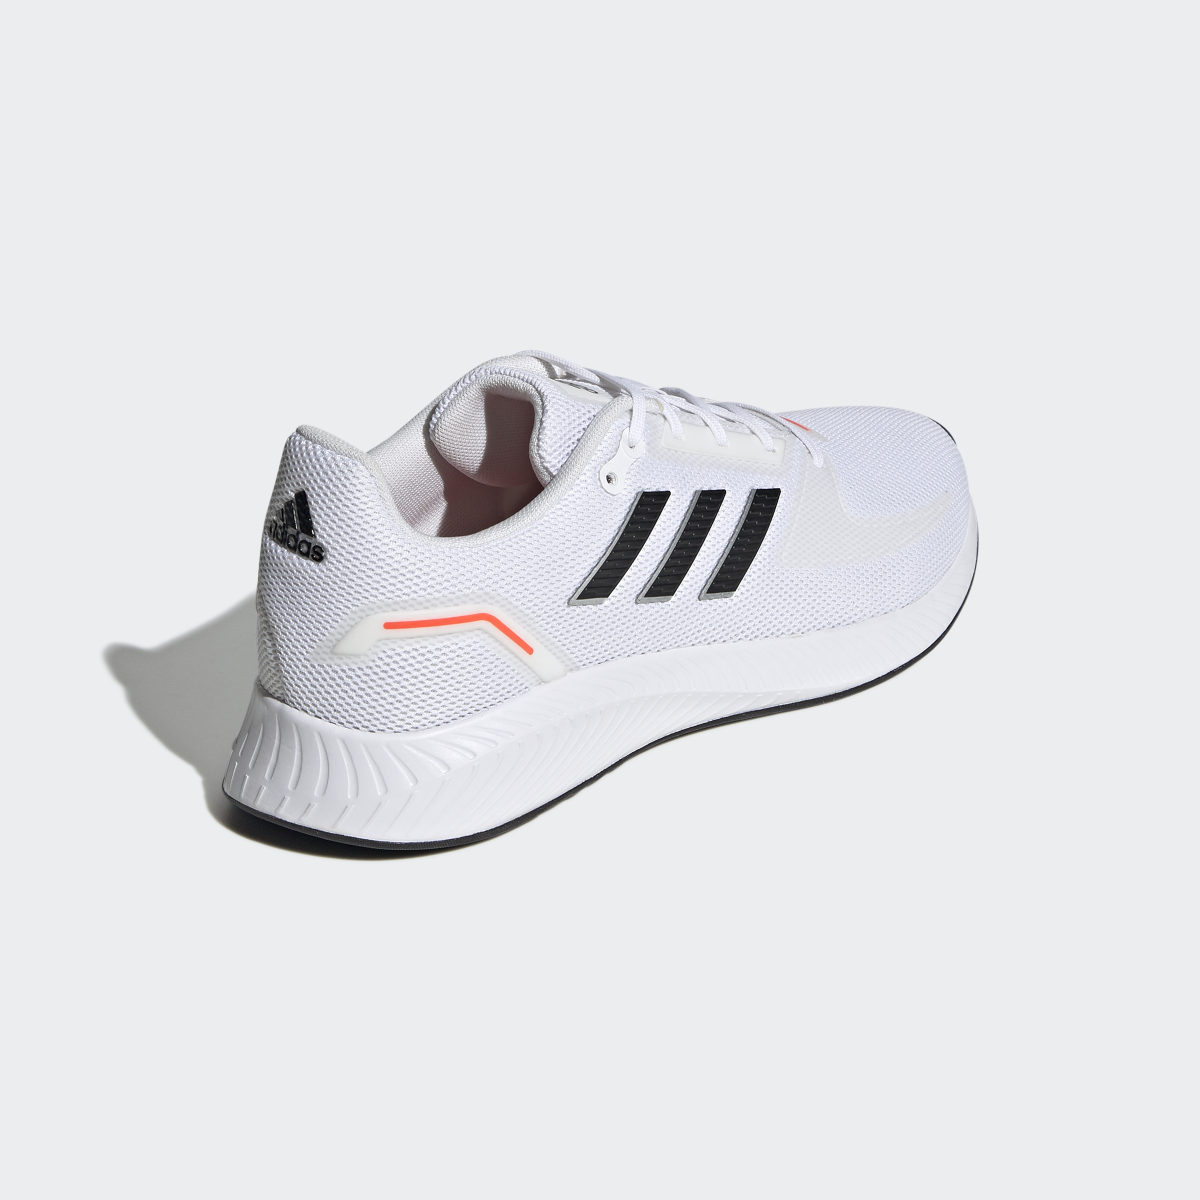 Adidas Run Falcon 2.0 Shoes. 6